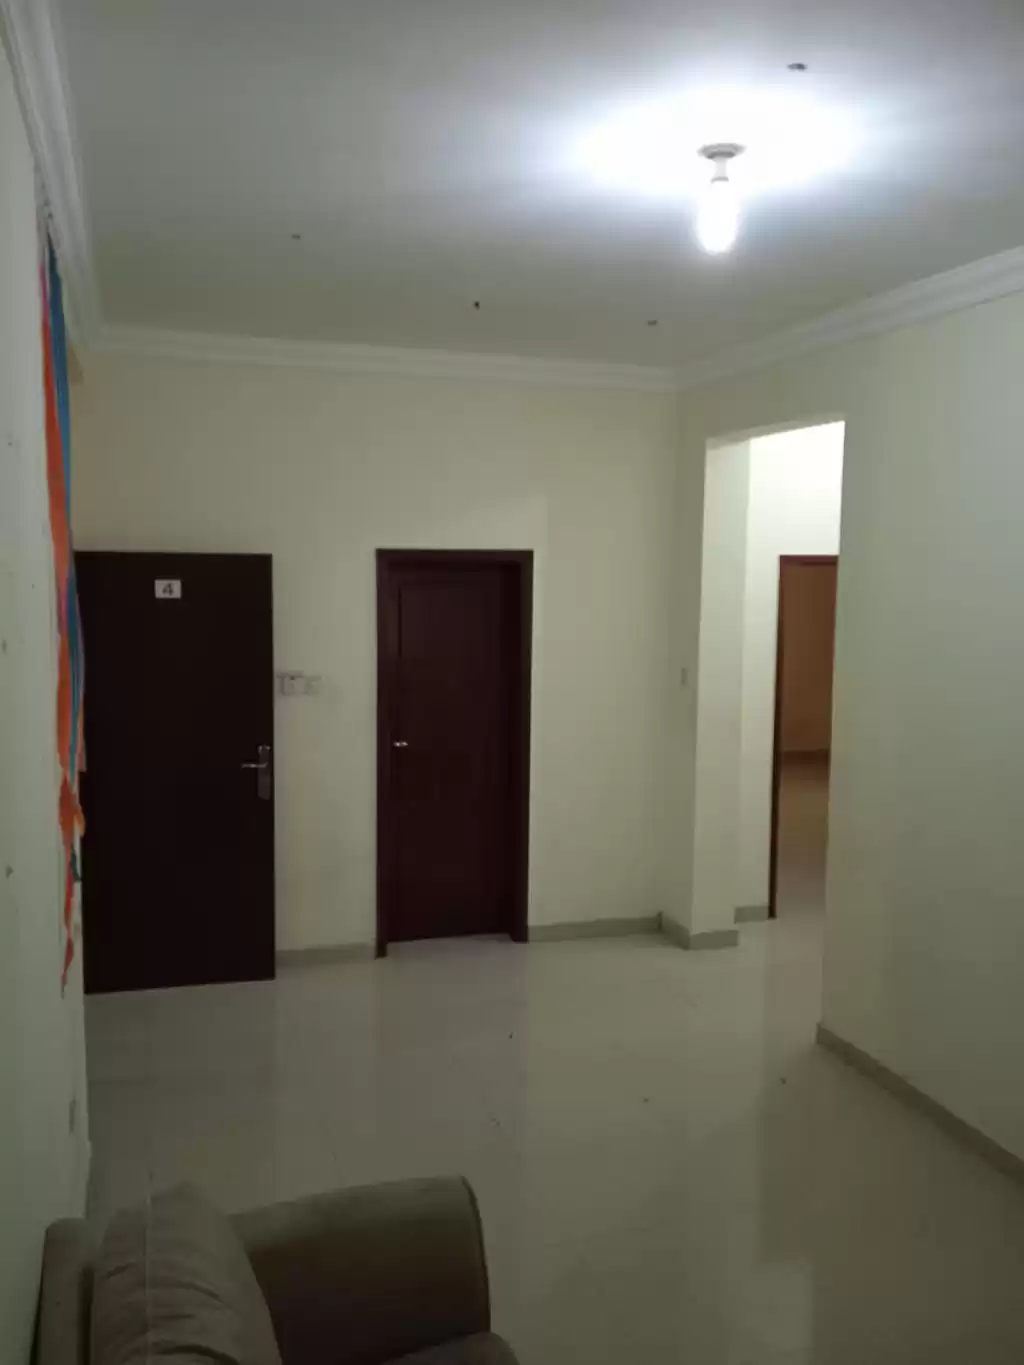 Résidentiel Propriété prête 2 chambres U / f Appartement  a louer au Al-Sadd , Doha #8901 - 1  image 